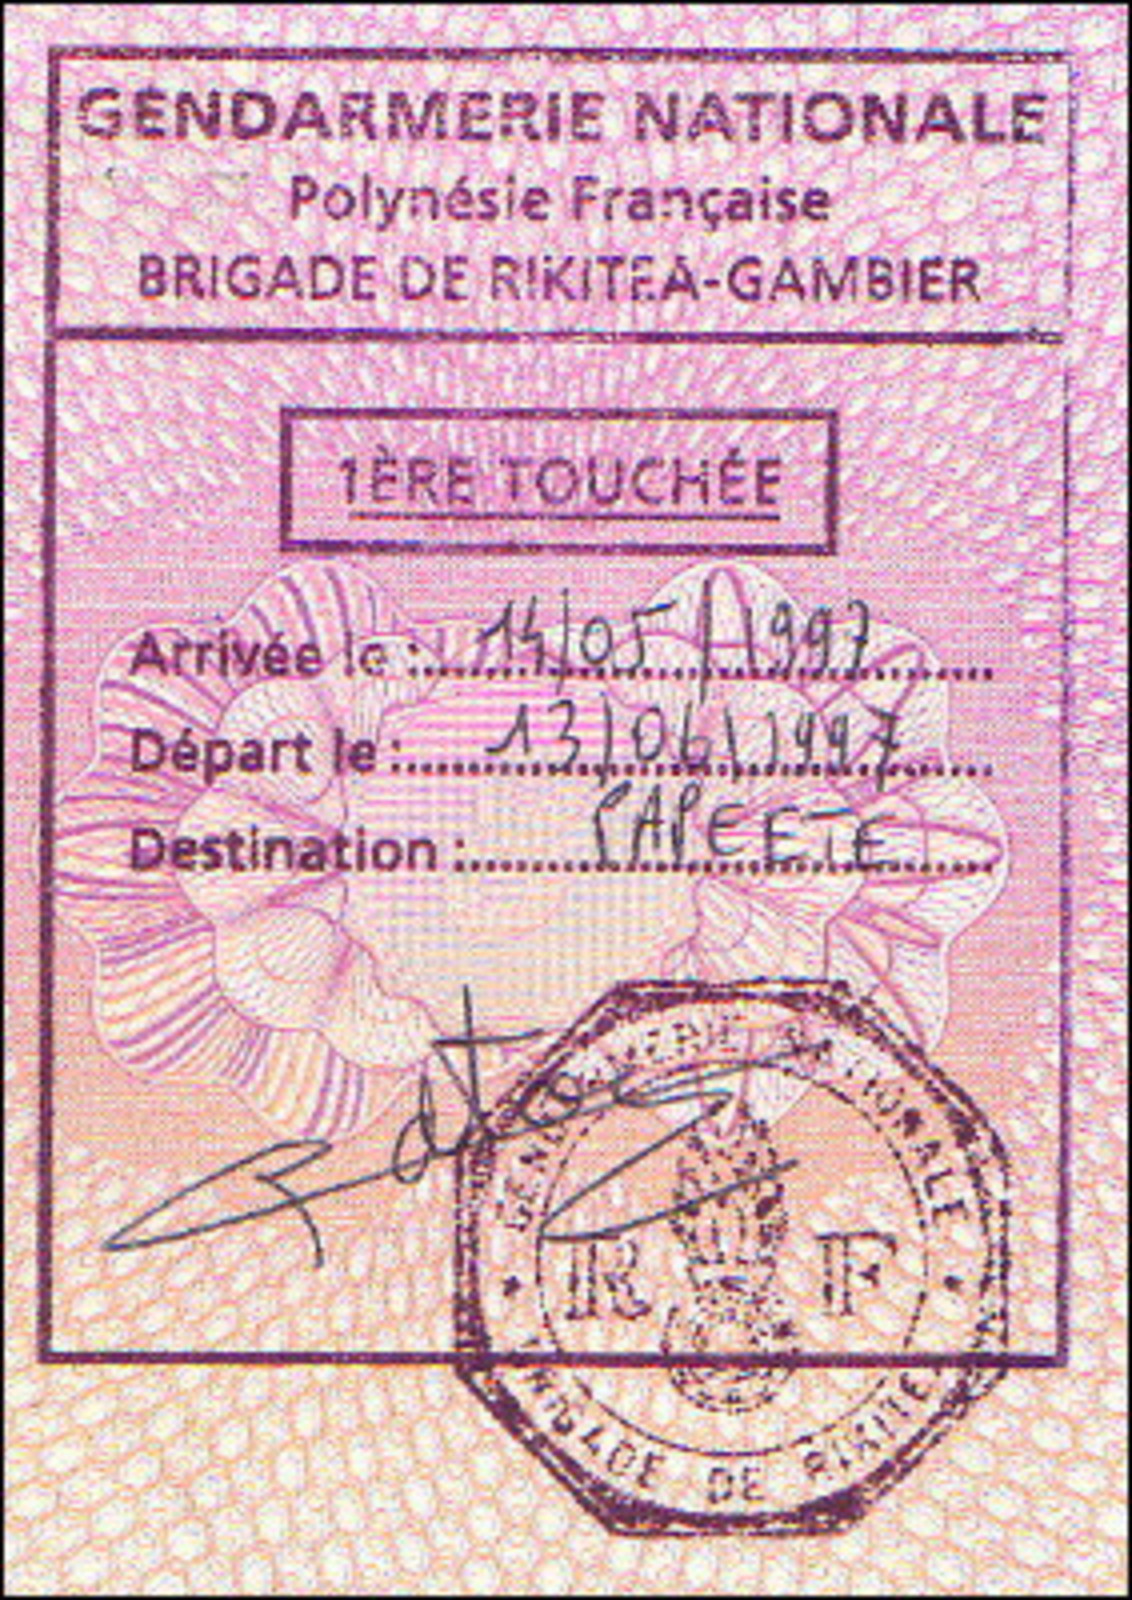 Entry stamp for Rikitea, French Polynesia